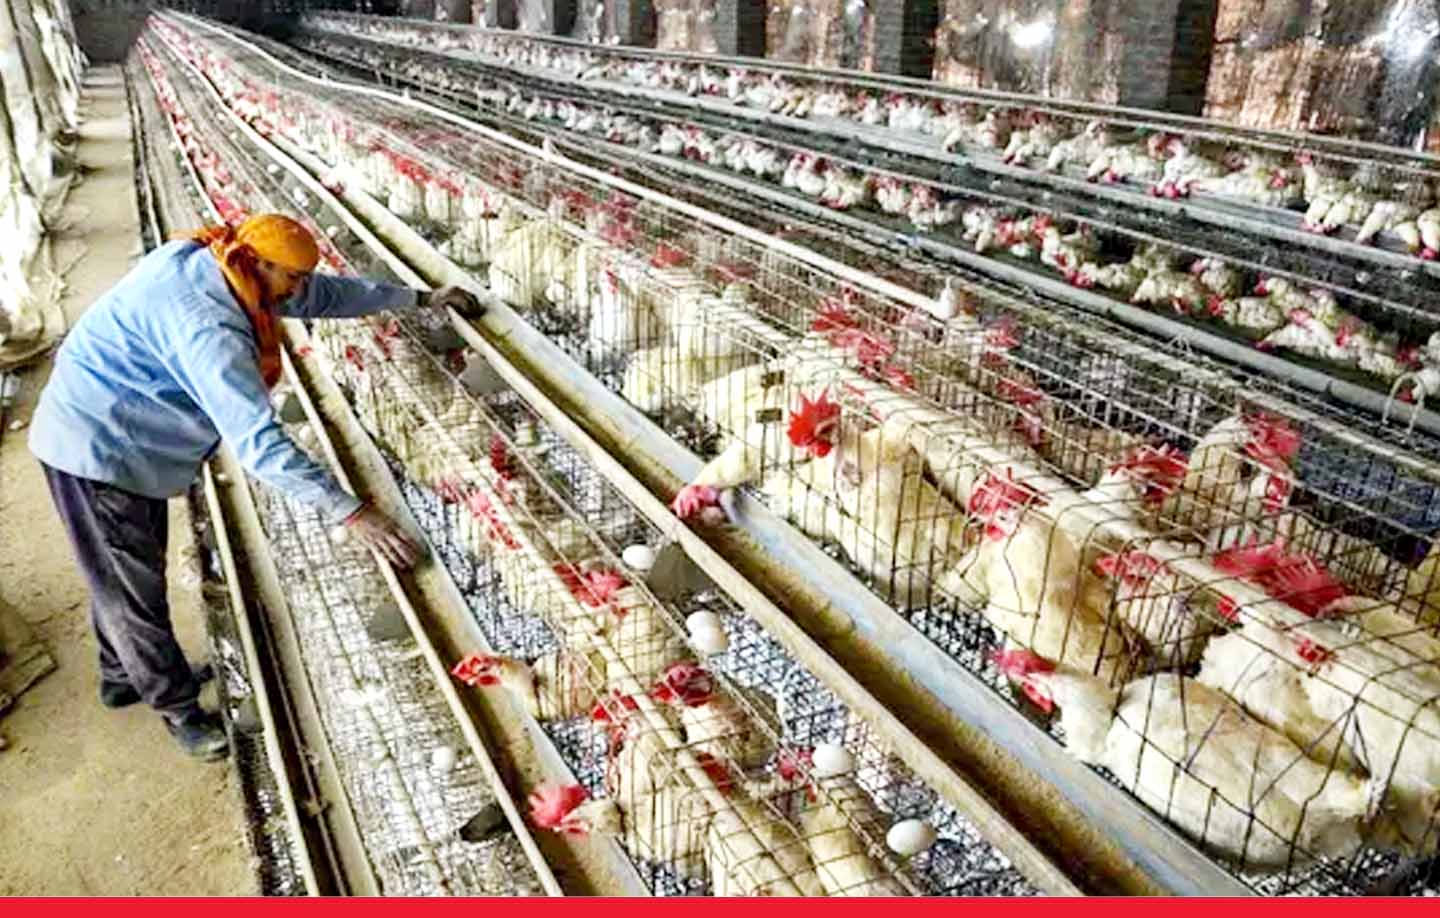 झारखंड: रांची में बर्ड फ्लू का अलर्ट जारी, चिकन, अंडे की खरीद-बिक्री पर रोक